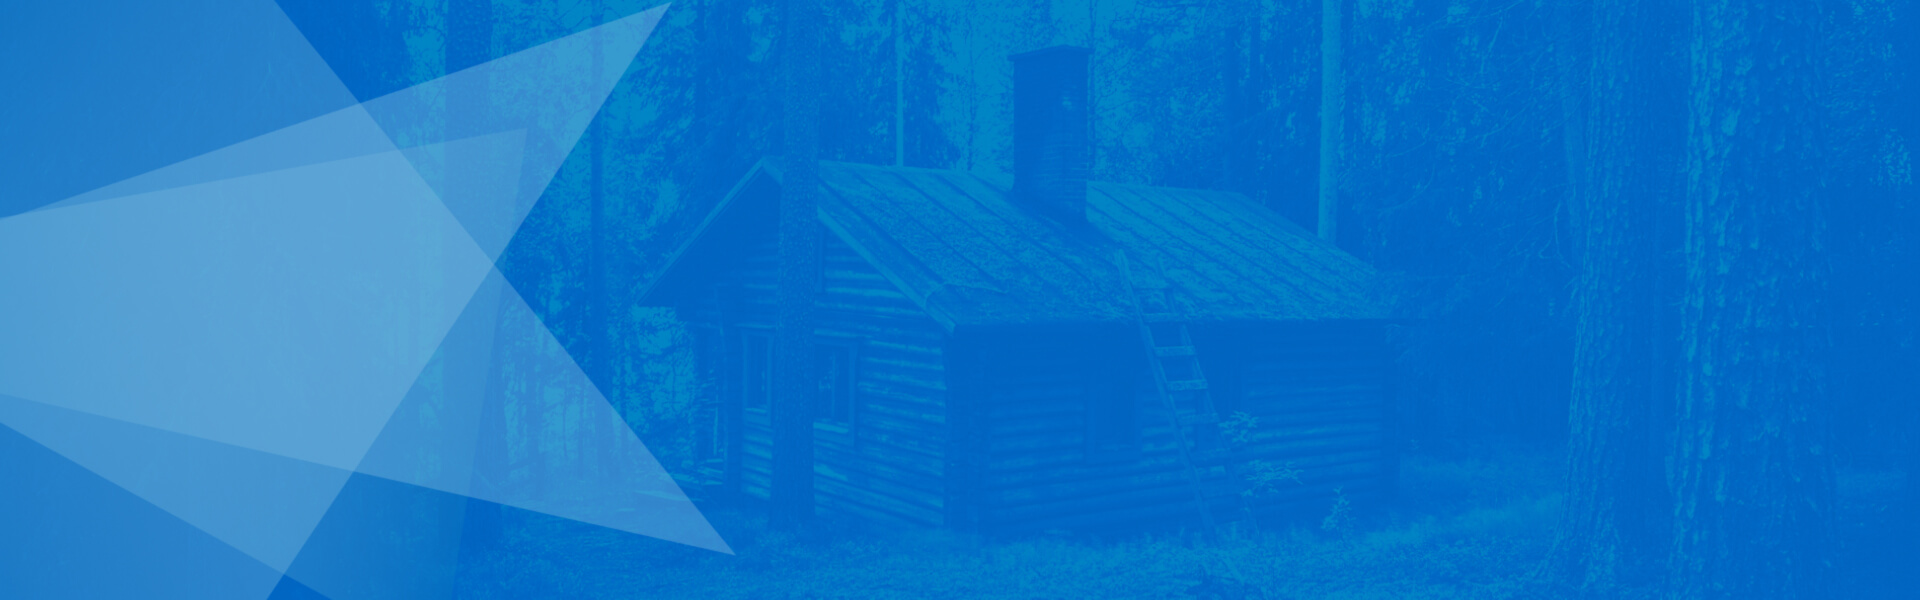 Textura de triángulos y casa en madera en el bosque fondo iT Synergy DevOps